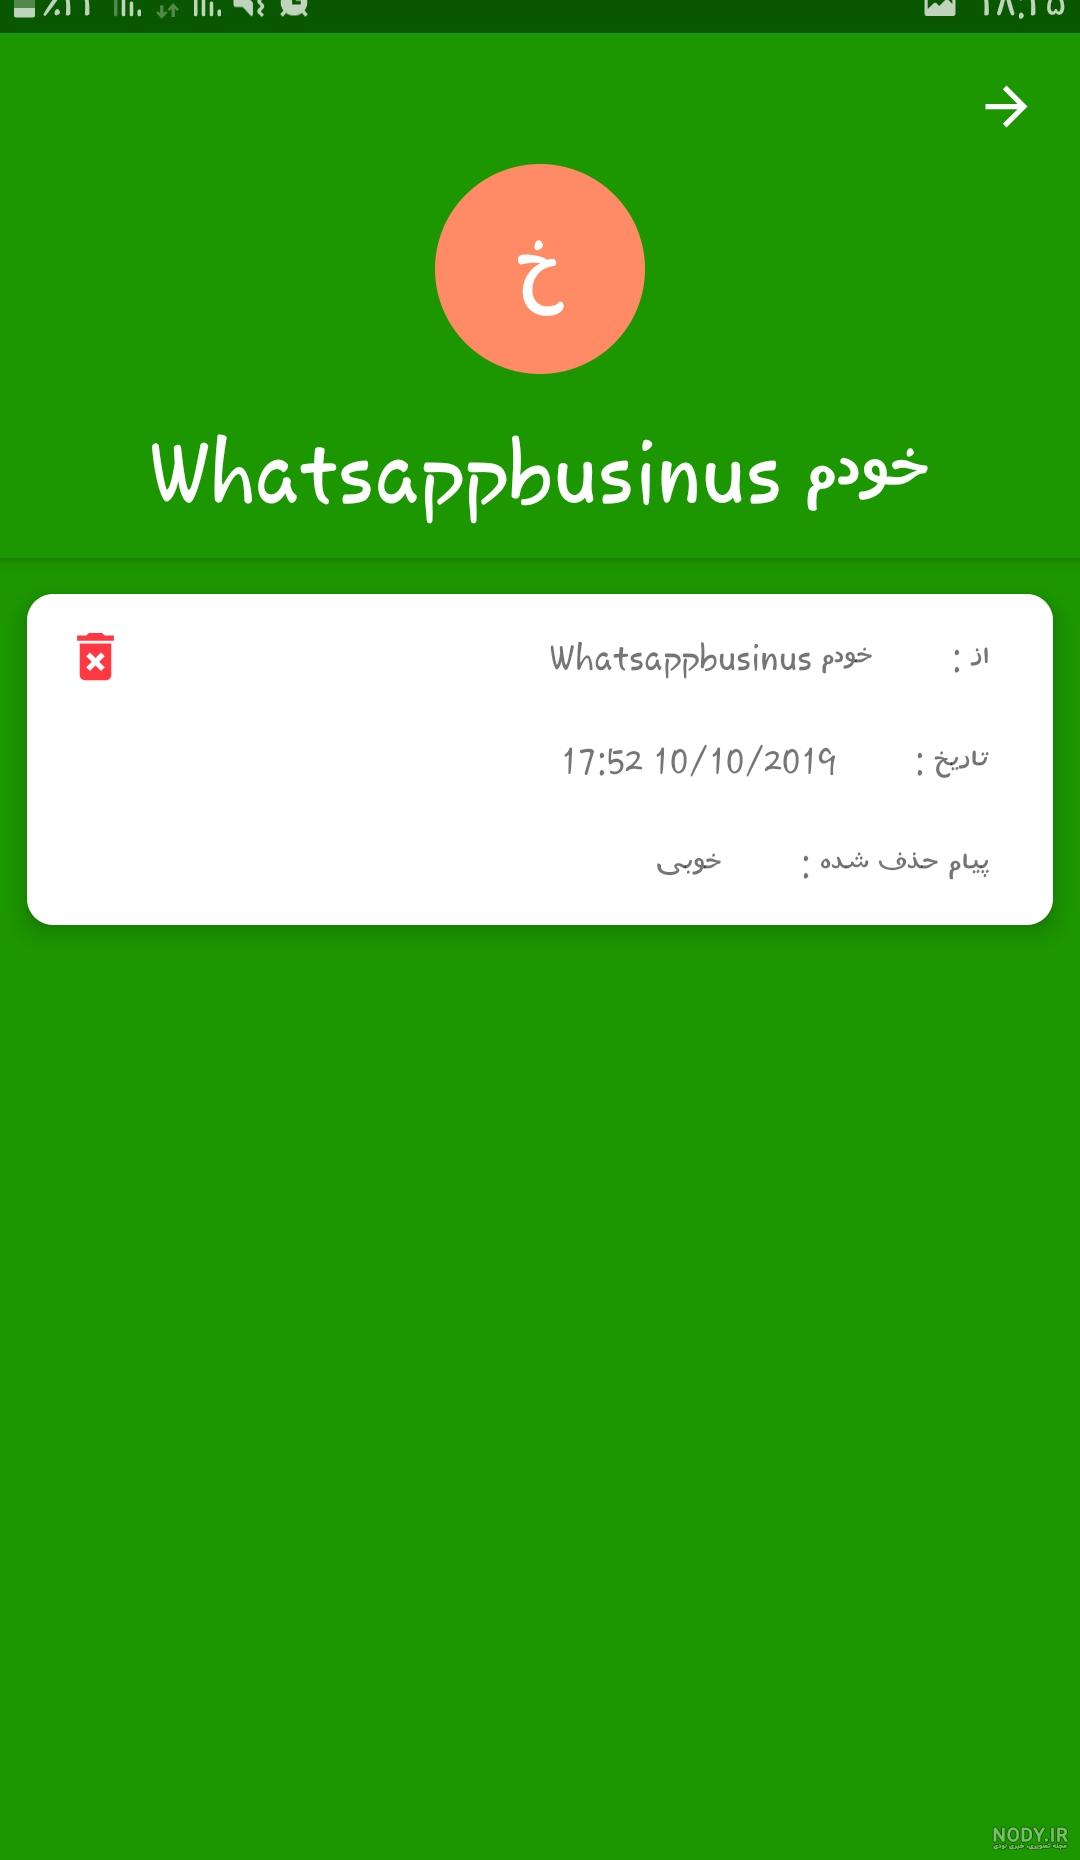 برنامه بازیابی پیامهای حذف شده واتساپ